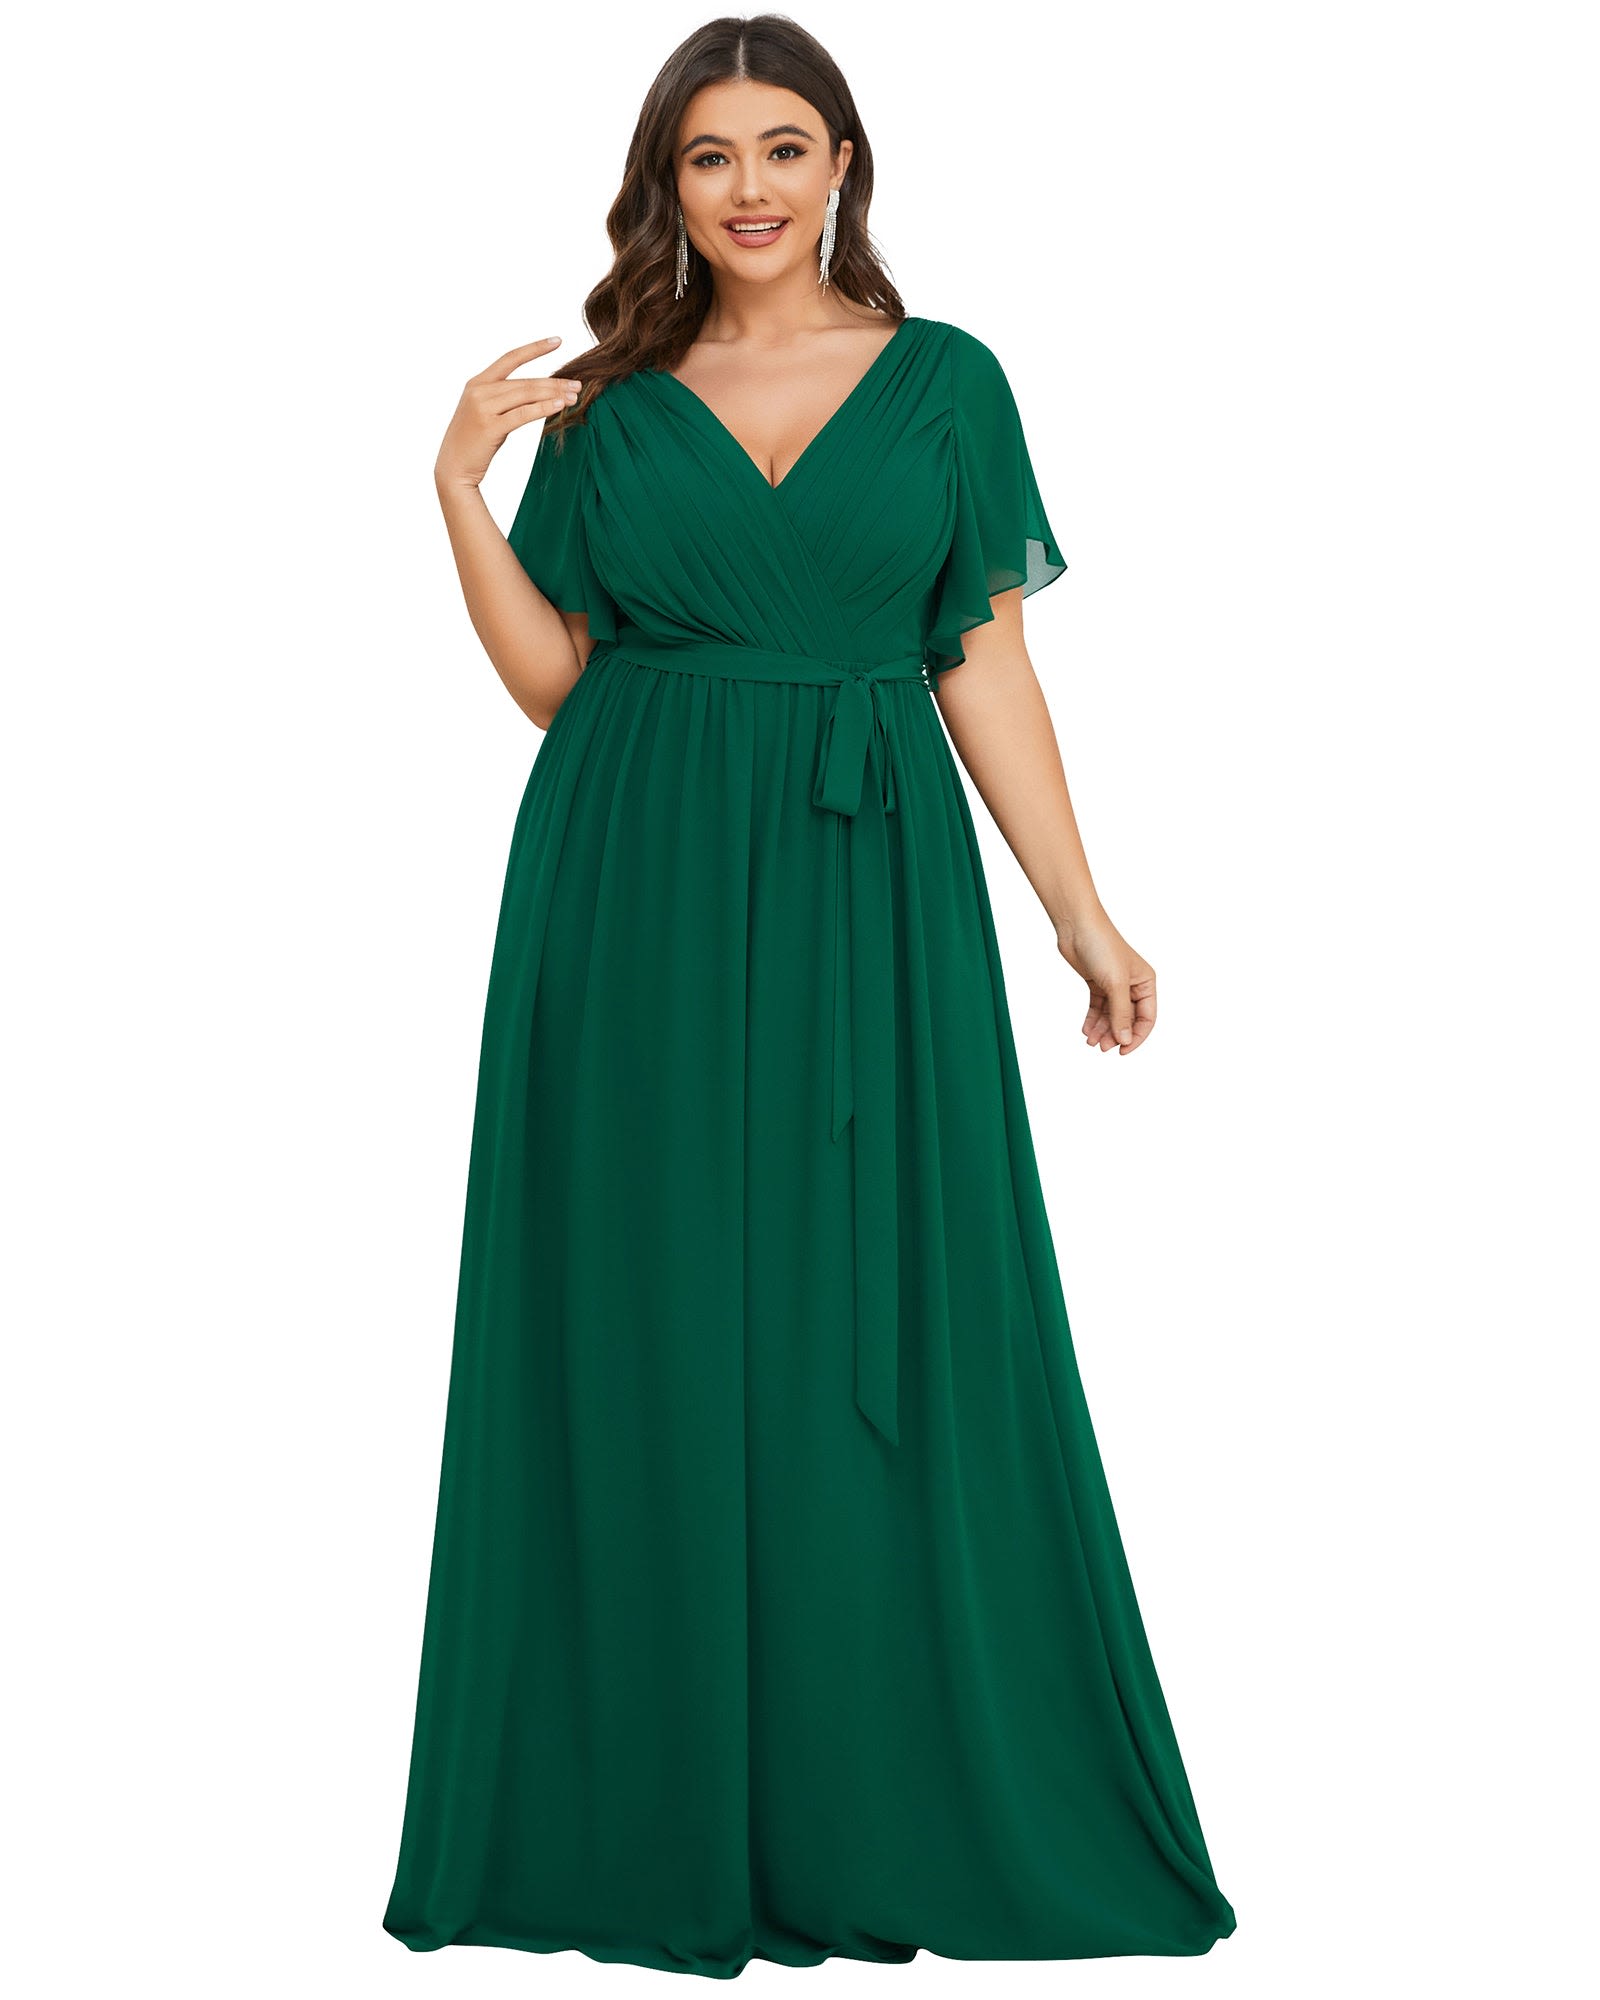 Green Wedding Guest Dress